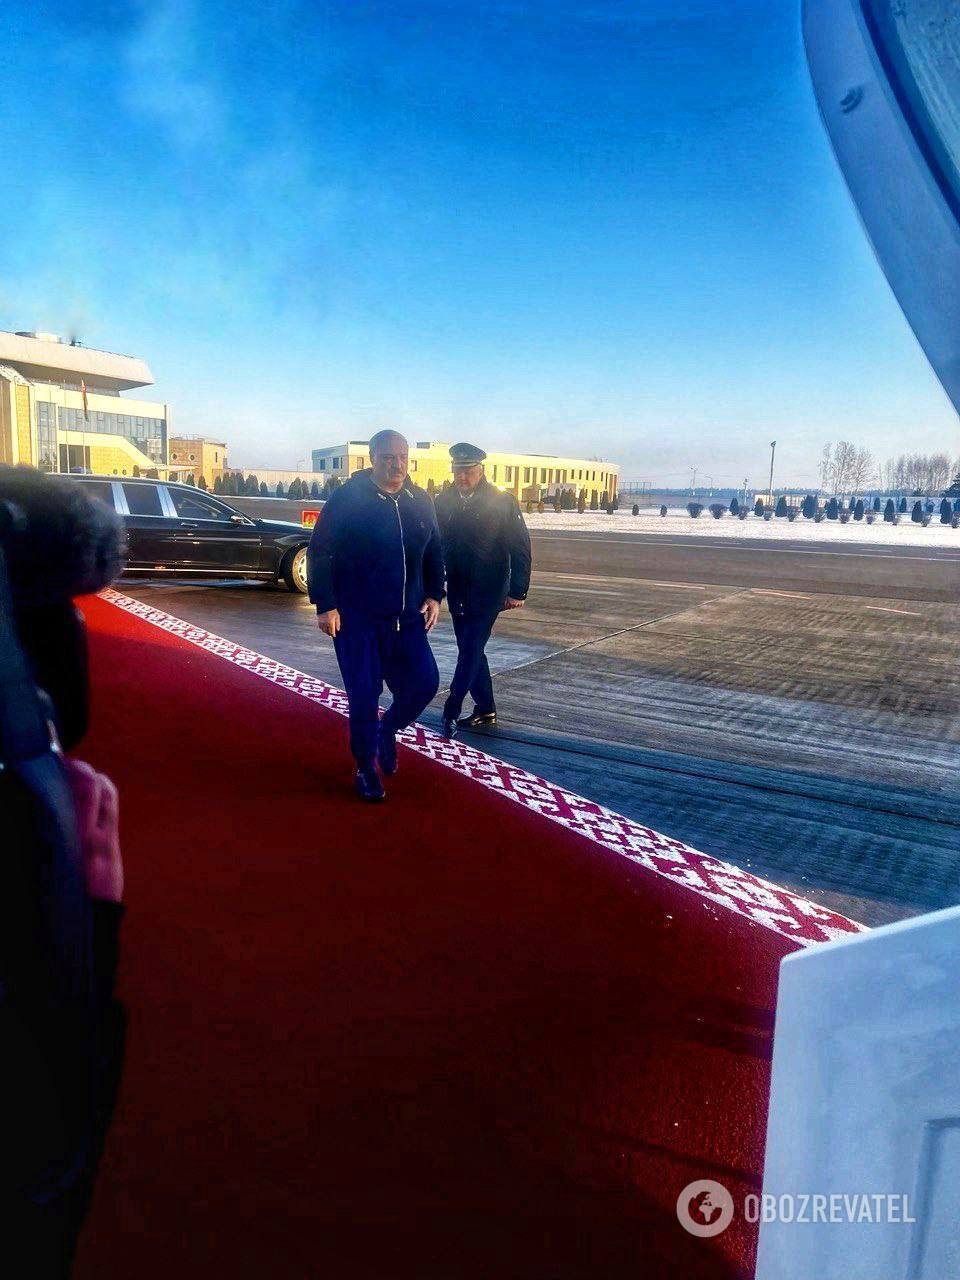 Лукашенко прибыл в Пекин на встречу с Си: ожидается подписание договоров "в ключевых областях". Фото